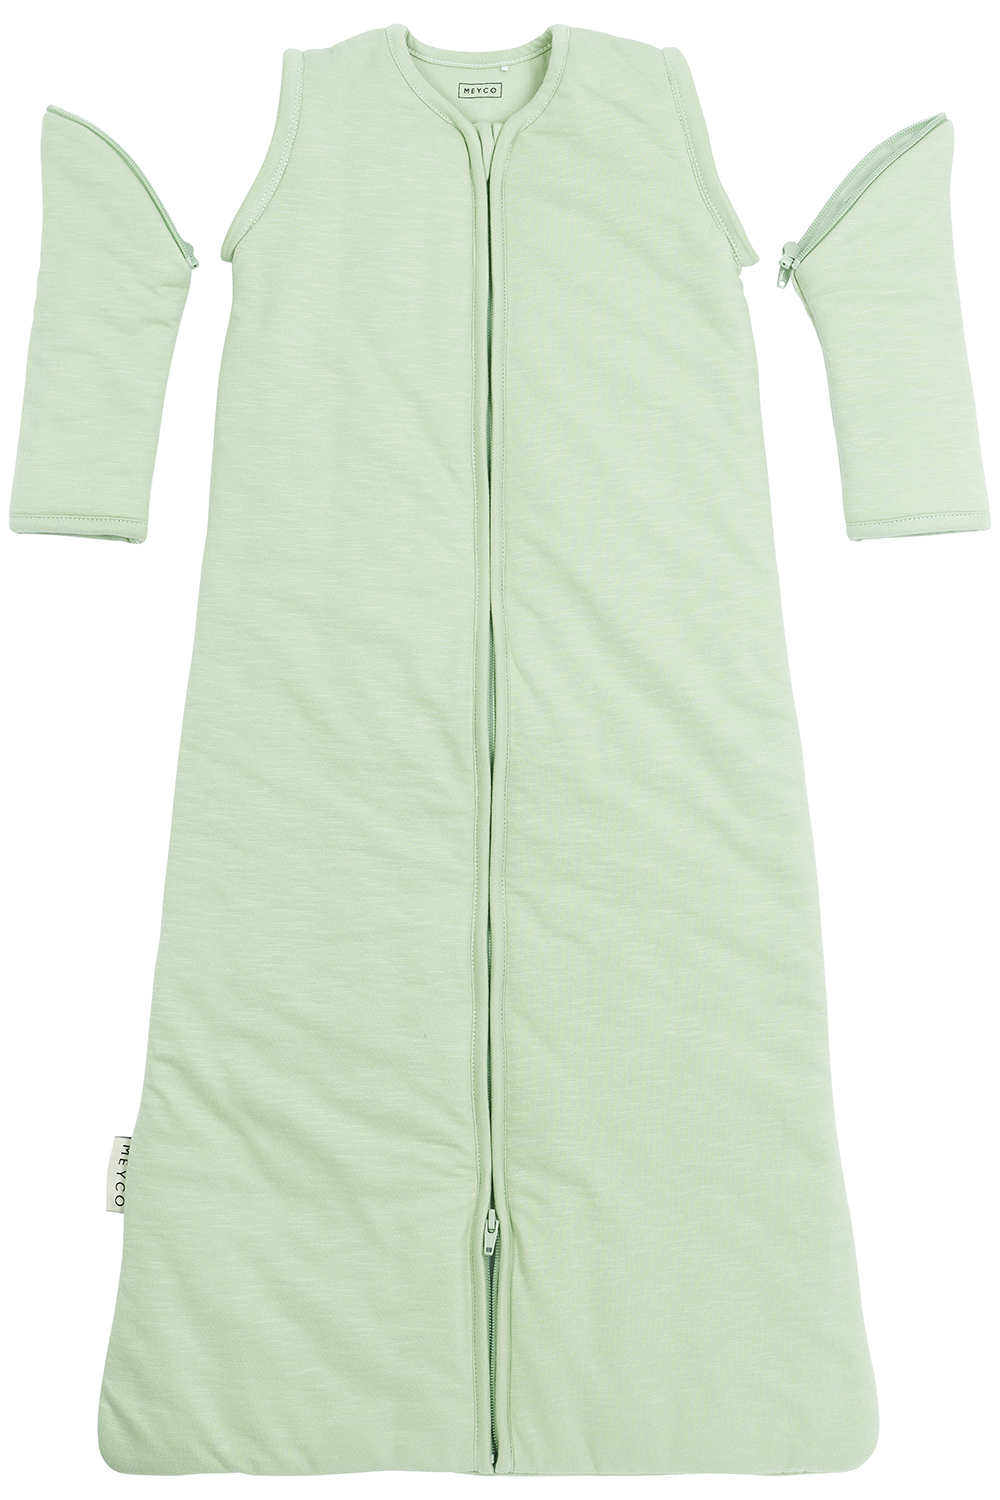 Babyschlafsack mit abnehmbaren Ärmeln Slub - soft green - 90cm